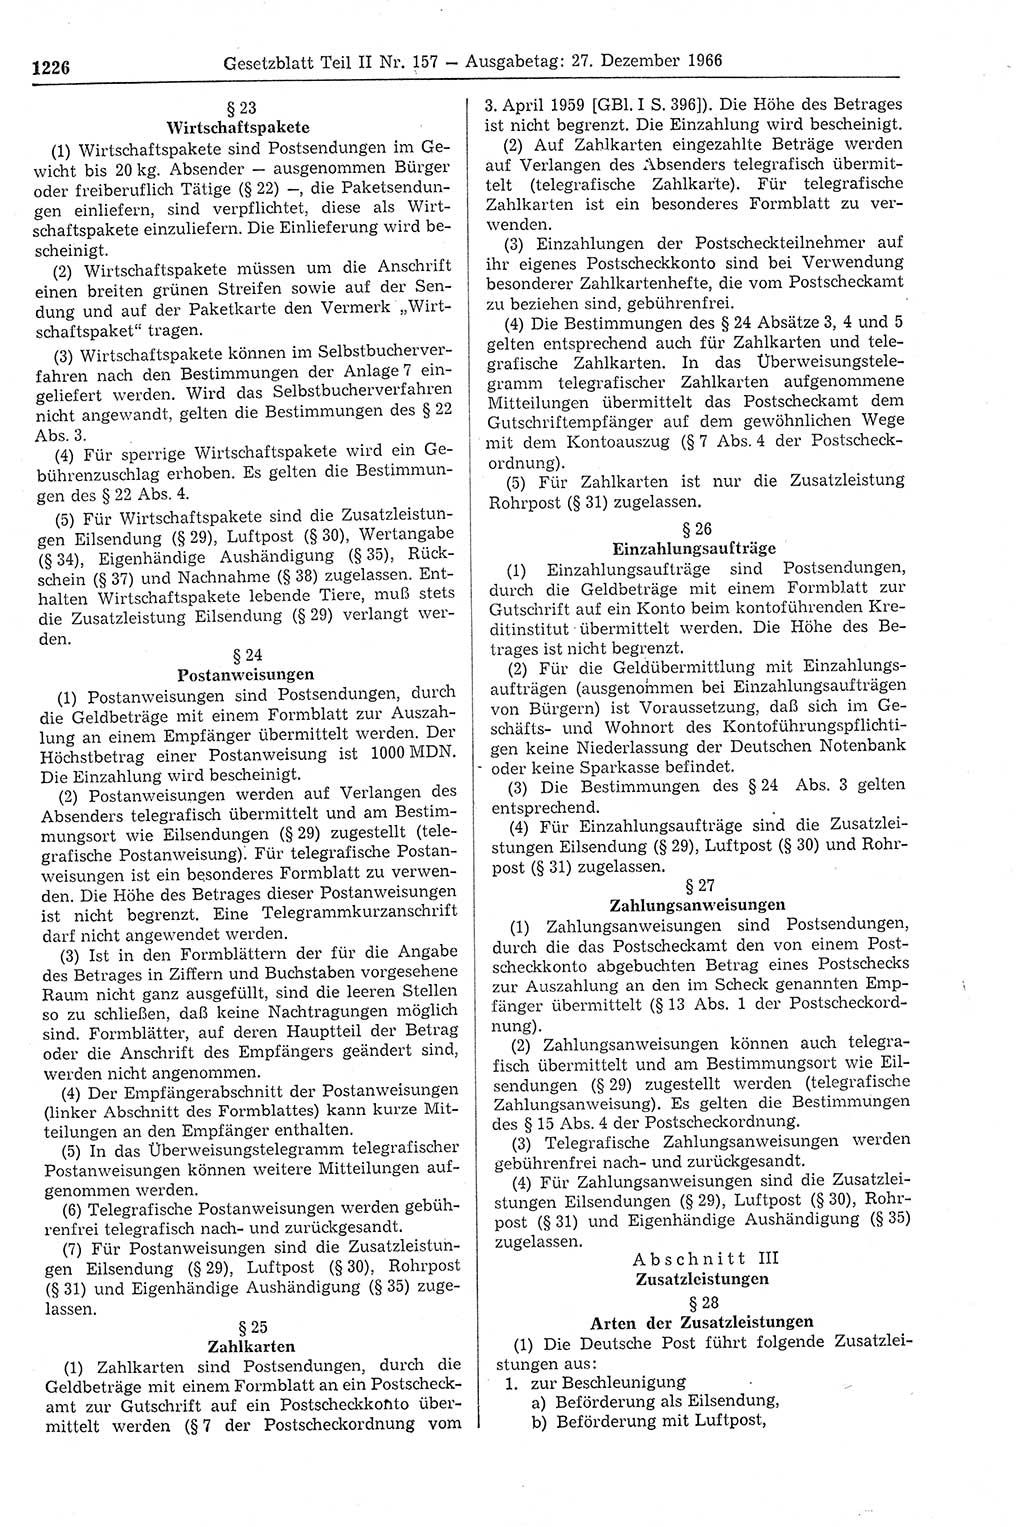 Gesetzblatt (GBl.) der Deutschen Demokratischen Republik (DDR) Teil ⅠⅠ 1966, Seite 1226 (GBl. DDR ⅠⅠ 1966, S. 1226)